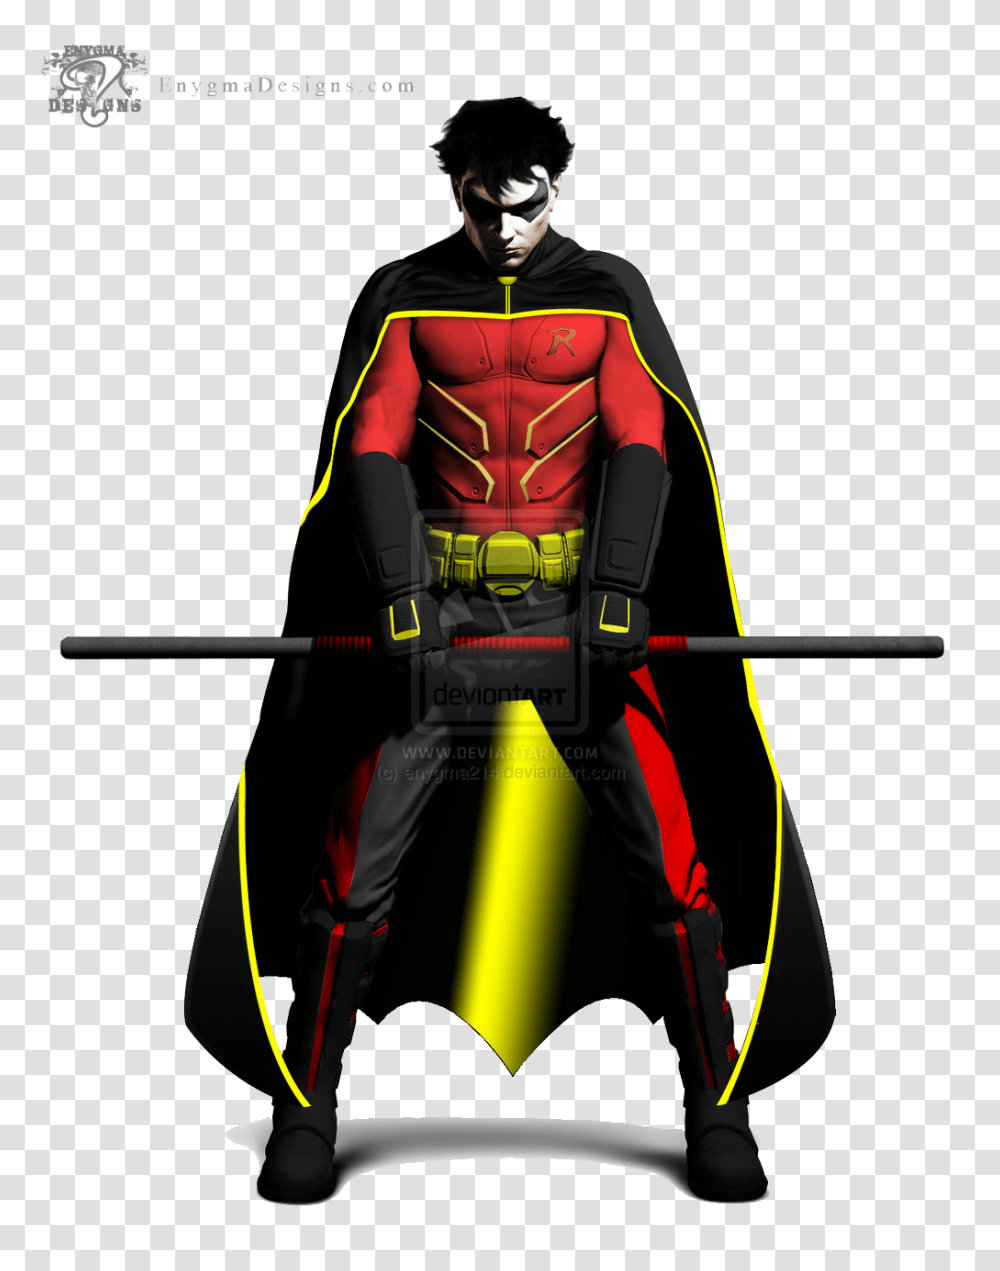 Arkham City Robin Pic, Ninja, Person, Human, Batman Transparent Png